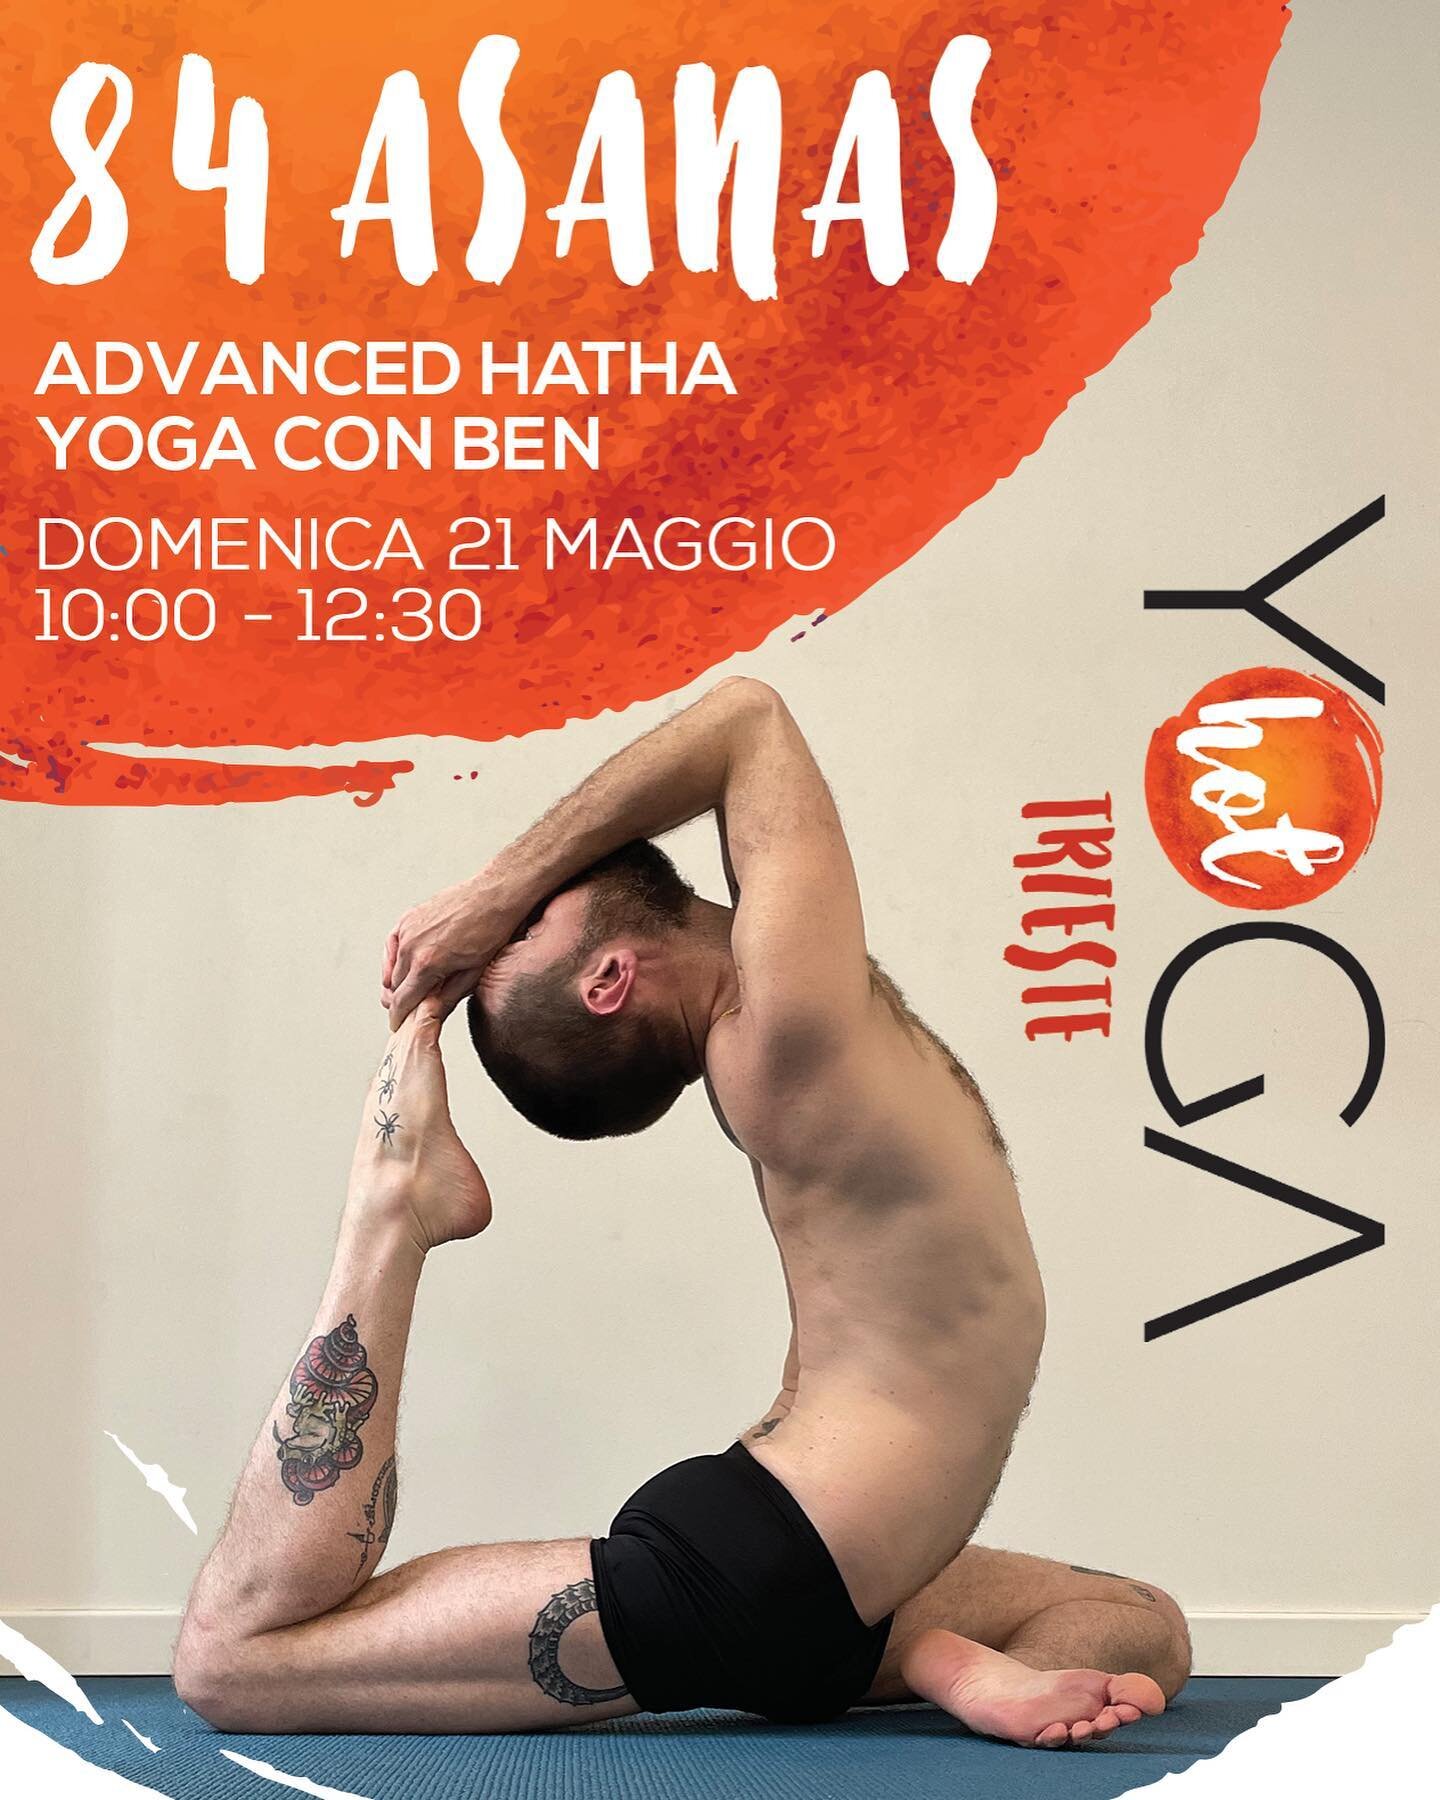 👊🏻 𝗠𝗮𝘀𝘁𝗲𝗿𝗰𝗹𝗮𝘀𝘀 𝟴𝟰 𝗣𝗼𝘀𝘁𝘂𝗿𝗲 𝗛𝗮𝘁𝗵𝗮: questa domenica con Ben 

Il Bikram Yoga &egrave; una serie di posture 𝗛𝗮𝘁𝗵𝗮 𝗬𝗼𝗴𝗮 che trae origine da una serie contenente 84 posture creata dal 𝗰𝘂𝗹𝘁𝘂𝗿𝗶𝘀𝘁𝗮 e 𝘆𝗼𝗴𝗶 𝗶𝗻